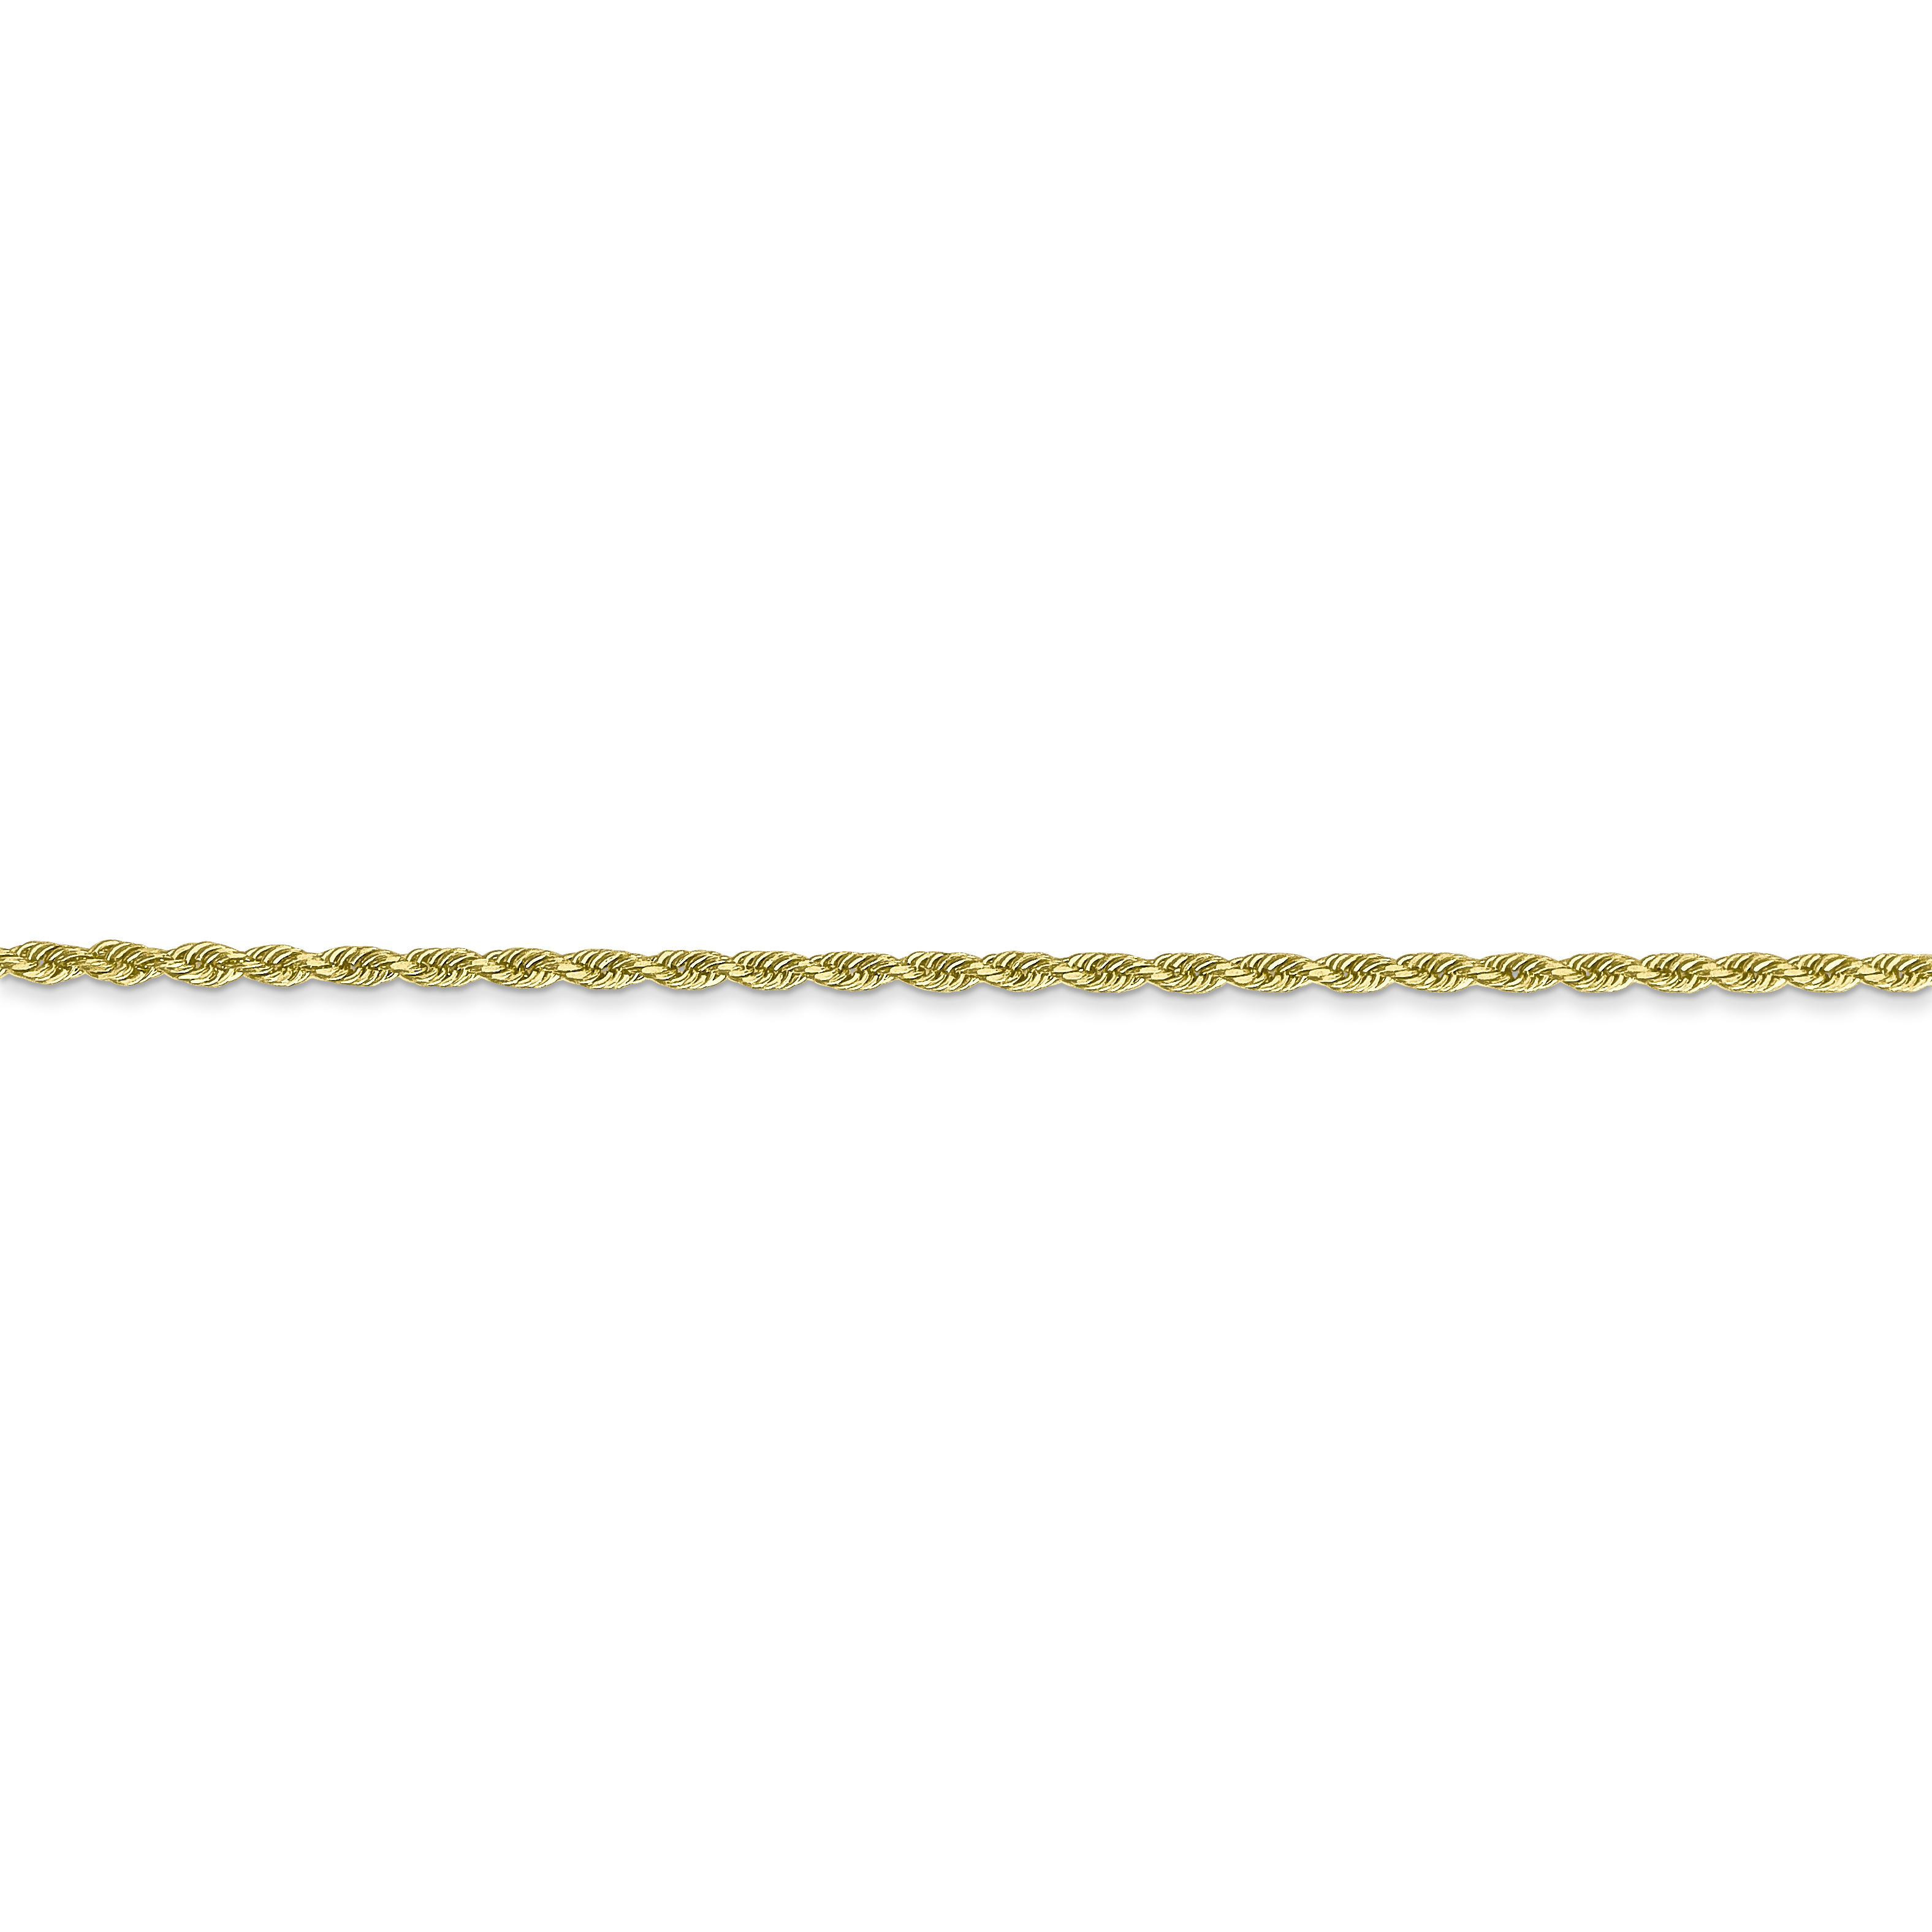 10K Yellow Gold 1.75mm Handmade Diamond Cut Rope Chain 30 Inch - image 3 of 6